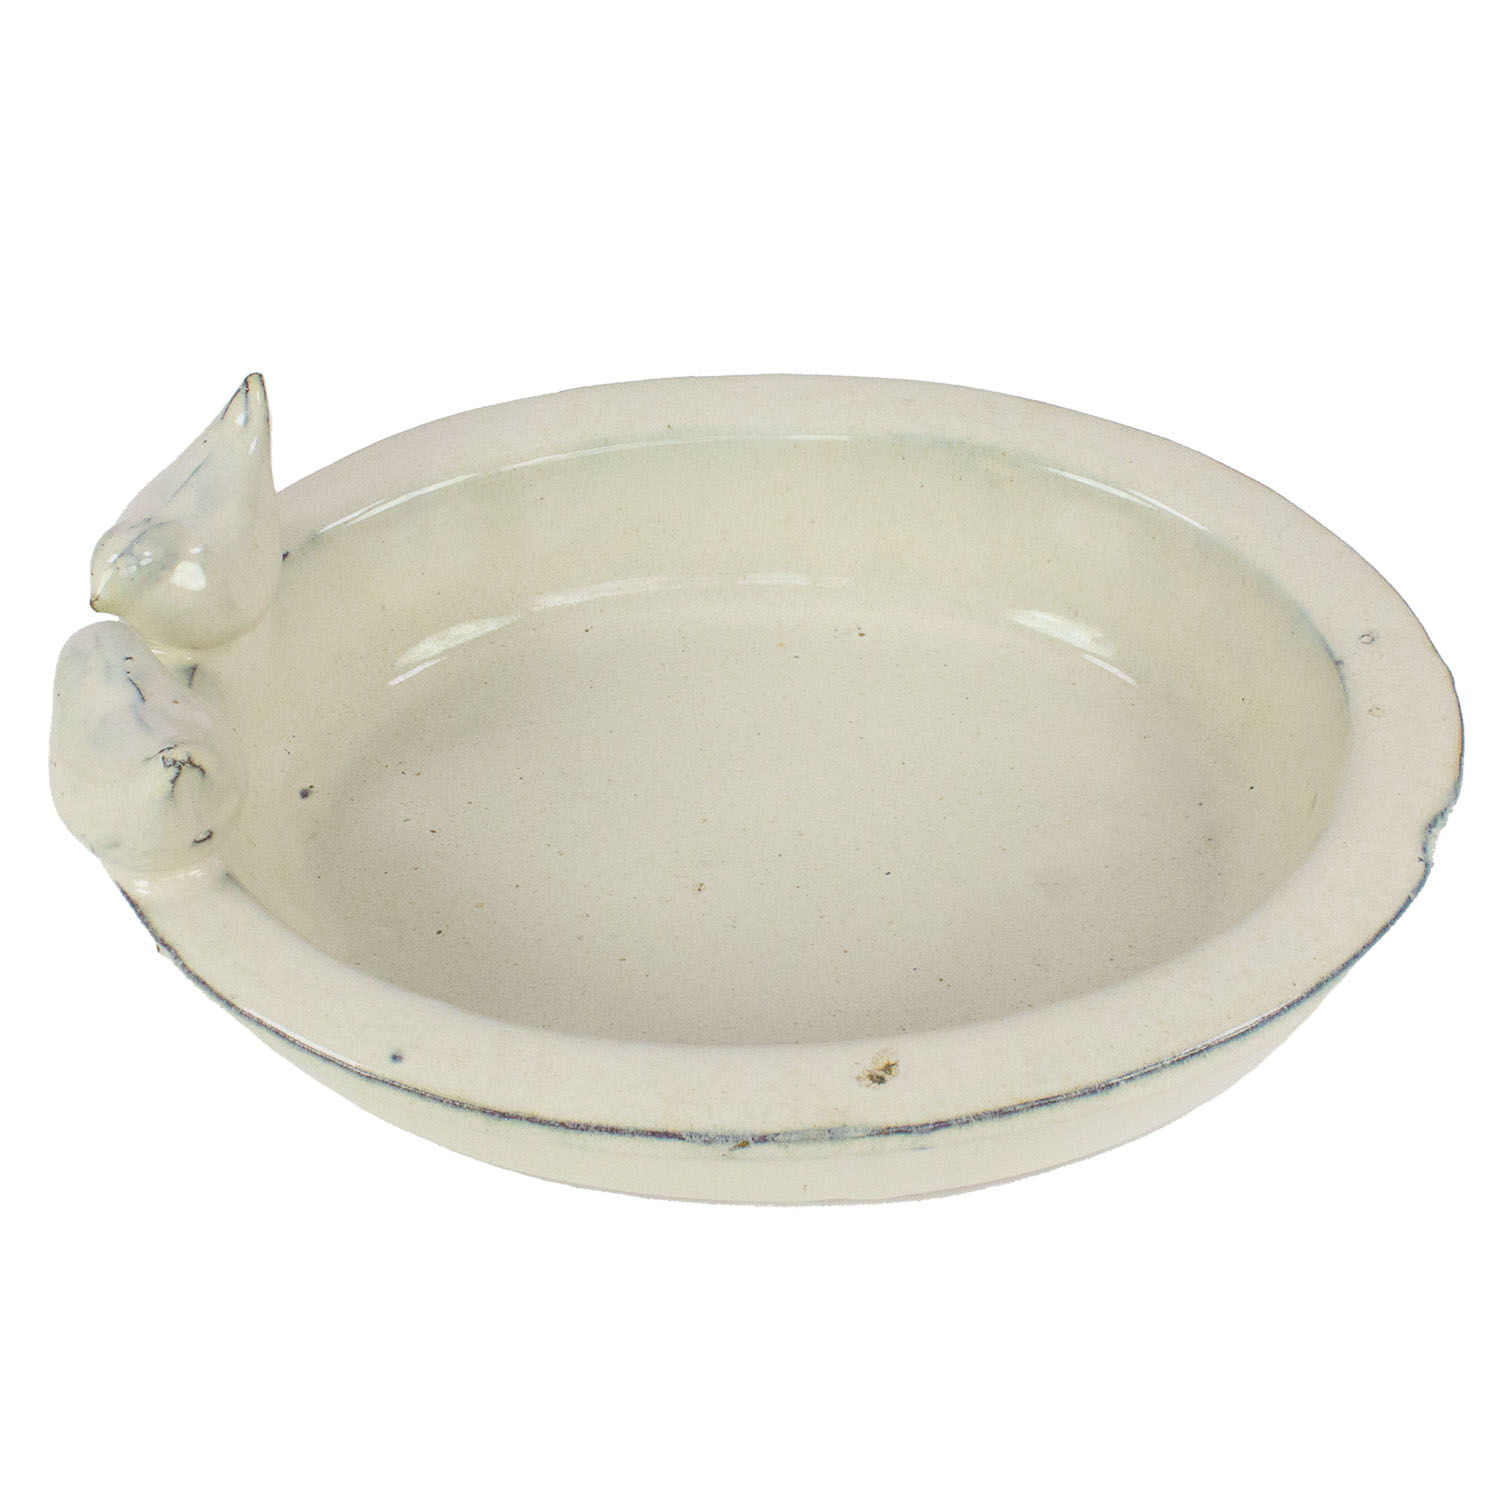 Vogeltränke Keramik Esschert weiß oval